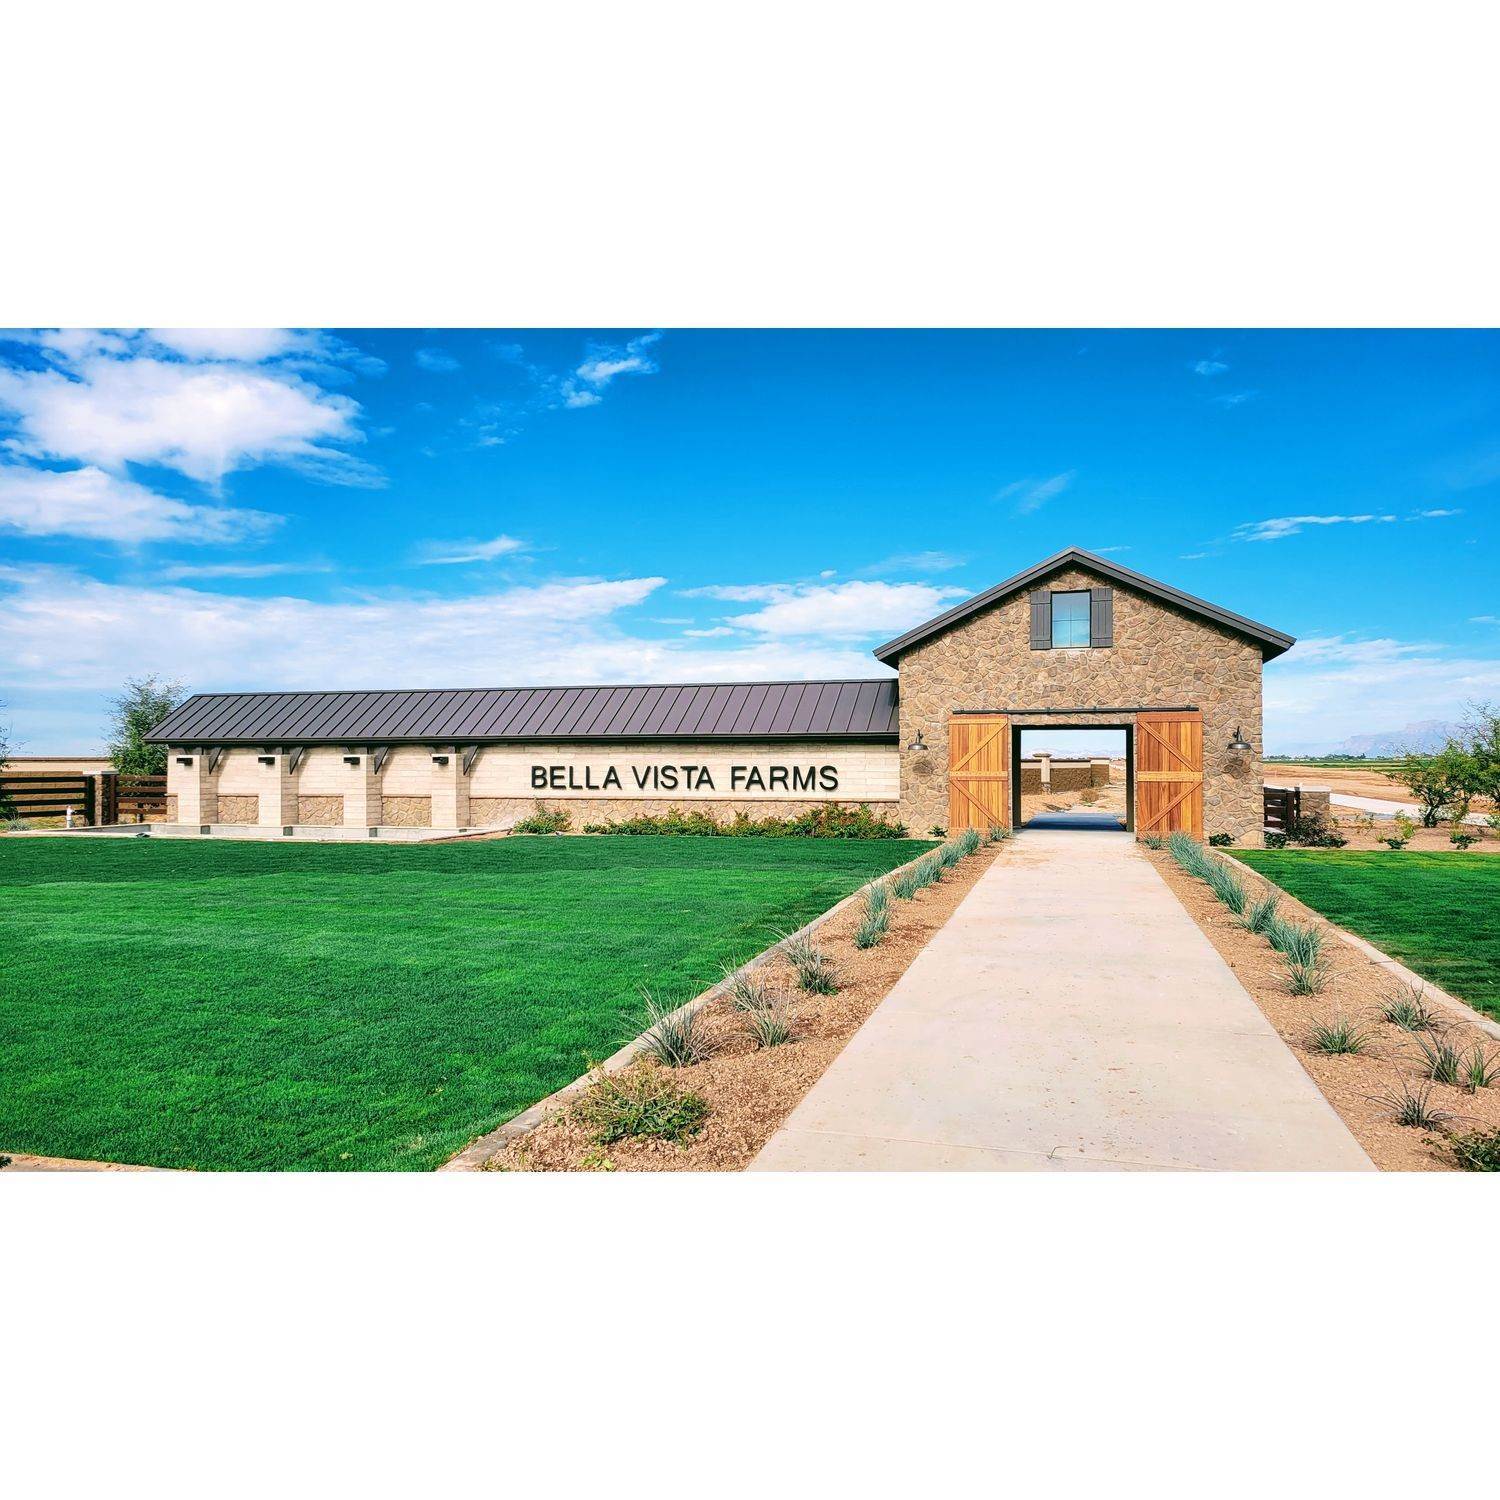 Bella Vista Farms xây dựng tại 6061 South Oxley, Mesa, AZ 85212